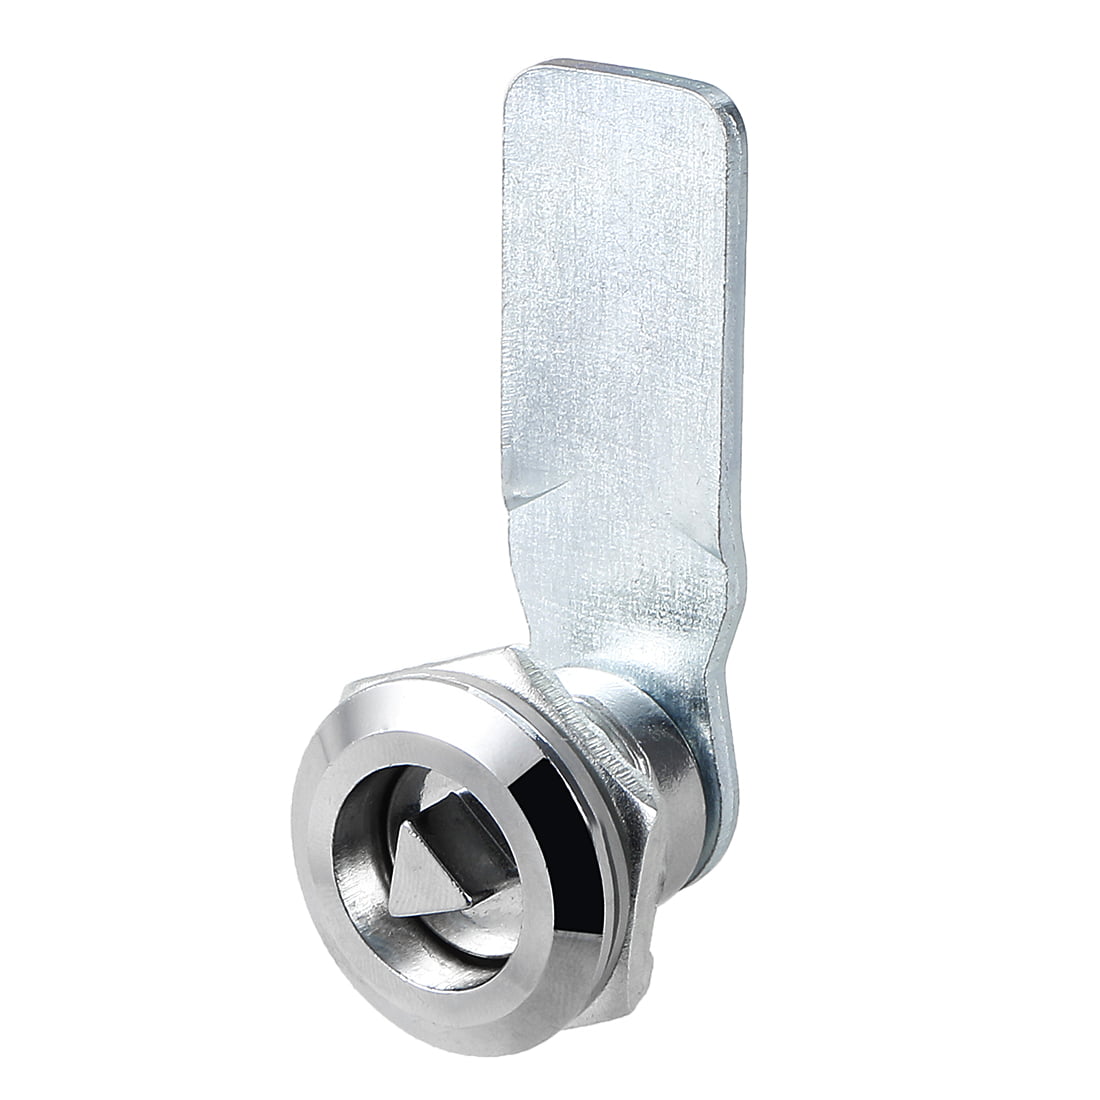 23mmx19mm Cylinder Zinc Alloy Chrome Finish Plunger Cabinets Lock Keyed Alike